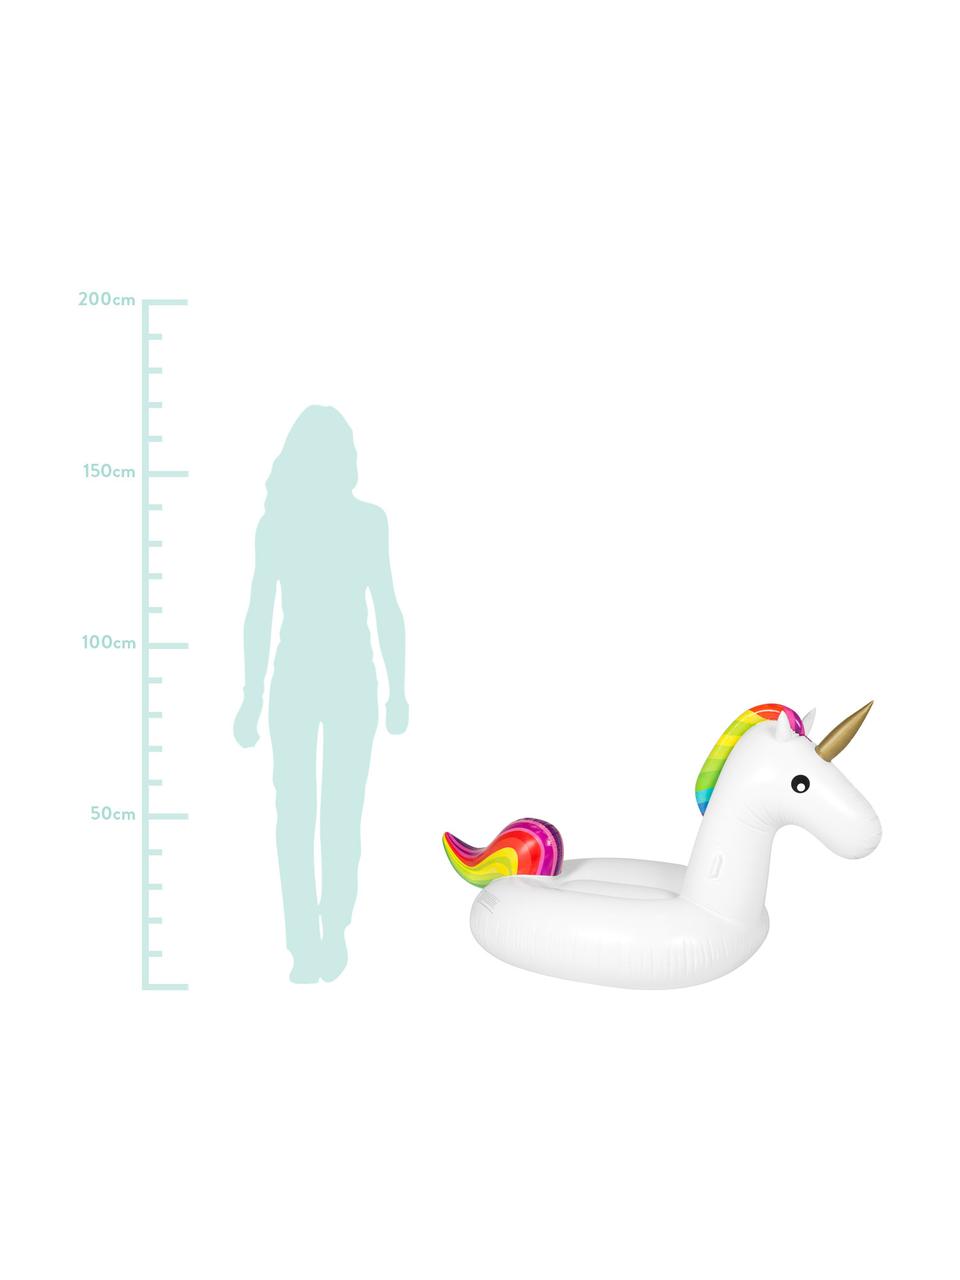 Dmuchany materac do pływania Unicorn, Tworzywo sztuczne (PVC), Wielobarwny, 190 x 83 cm